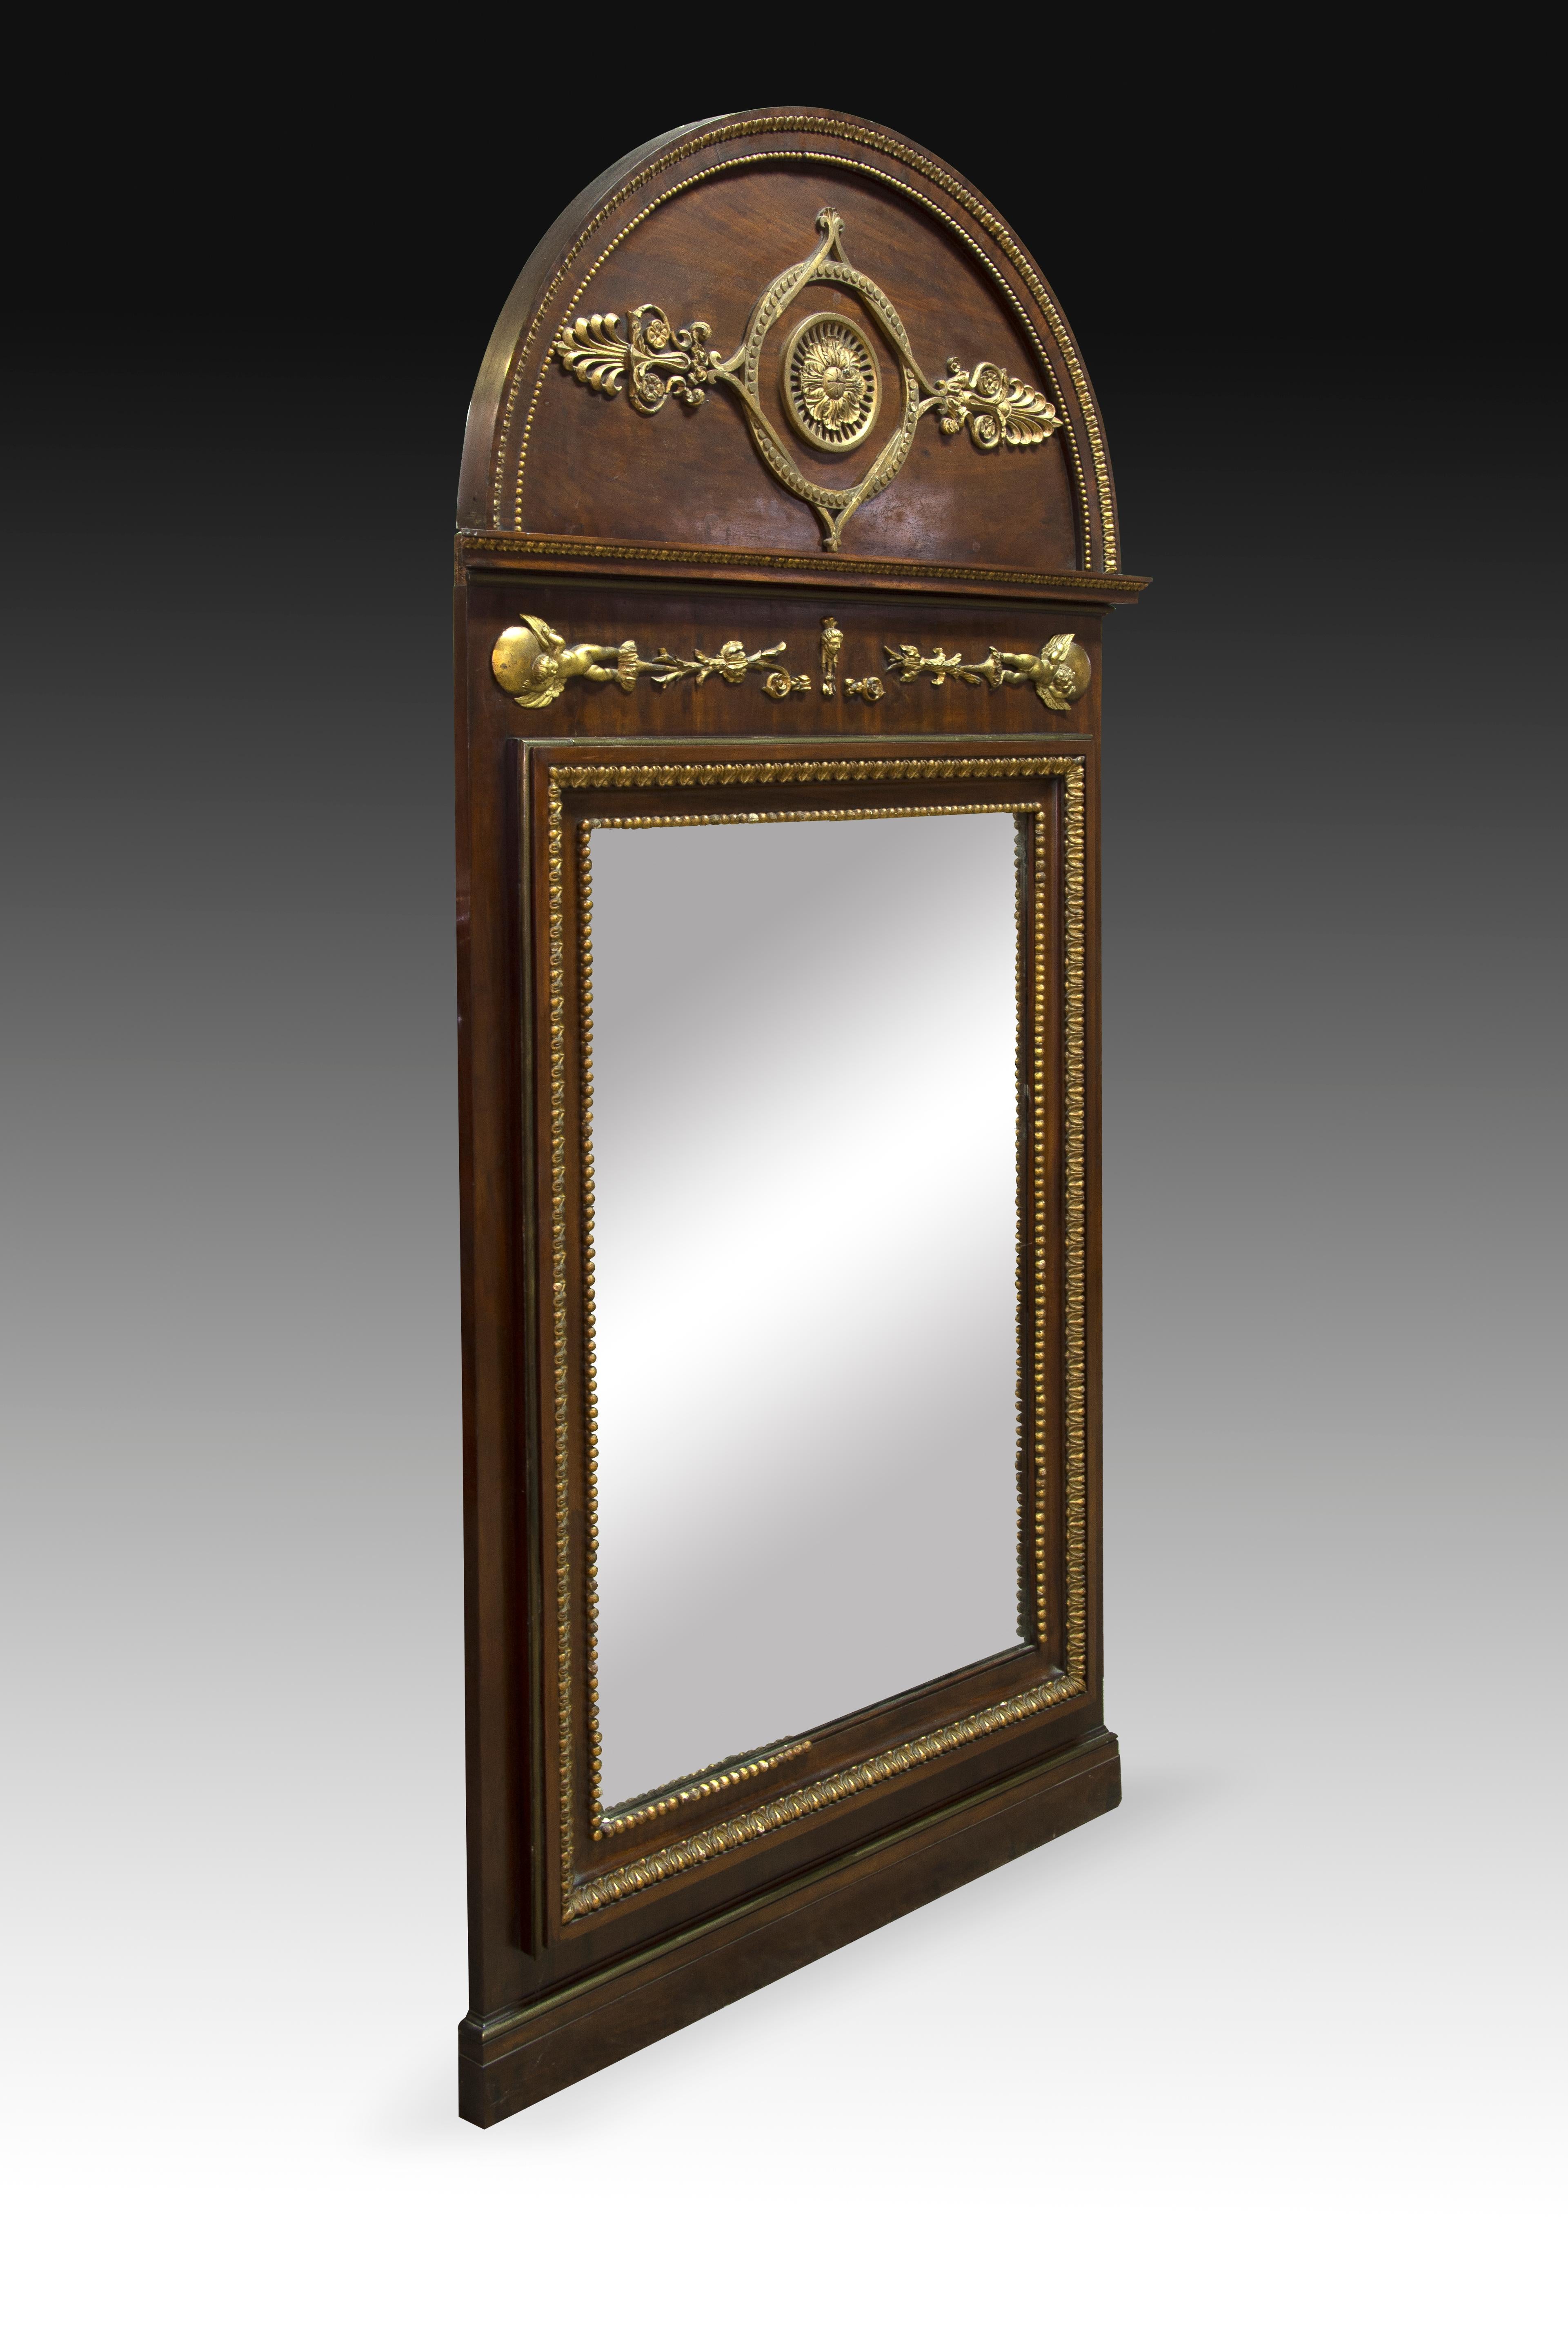 Miroir Fernando VII. Bois sculpté et doré, verre. Vers le début du 19ème siècle.
Miroir rectangulaire en bois sculpté dans sa couleur, se combinant avec des décorations de forte influence classique en bois sculpté et doré, rappelant les appliques en